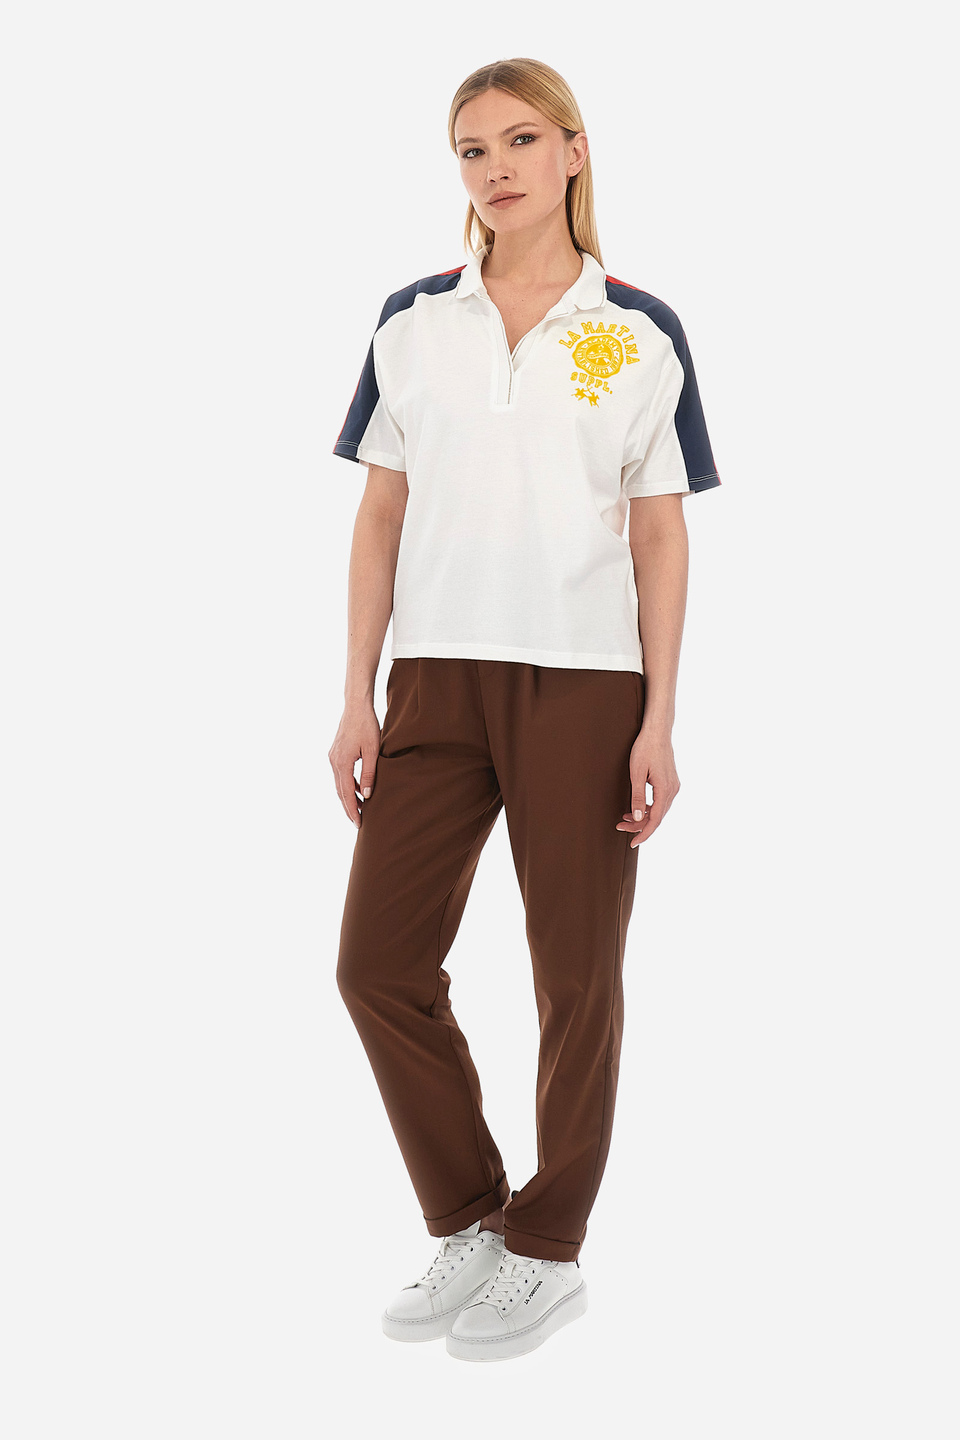 Damen-Poloshirt Regular Fit- Wenda | La Martina - Official Online Shop